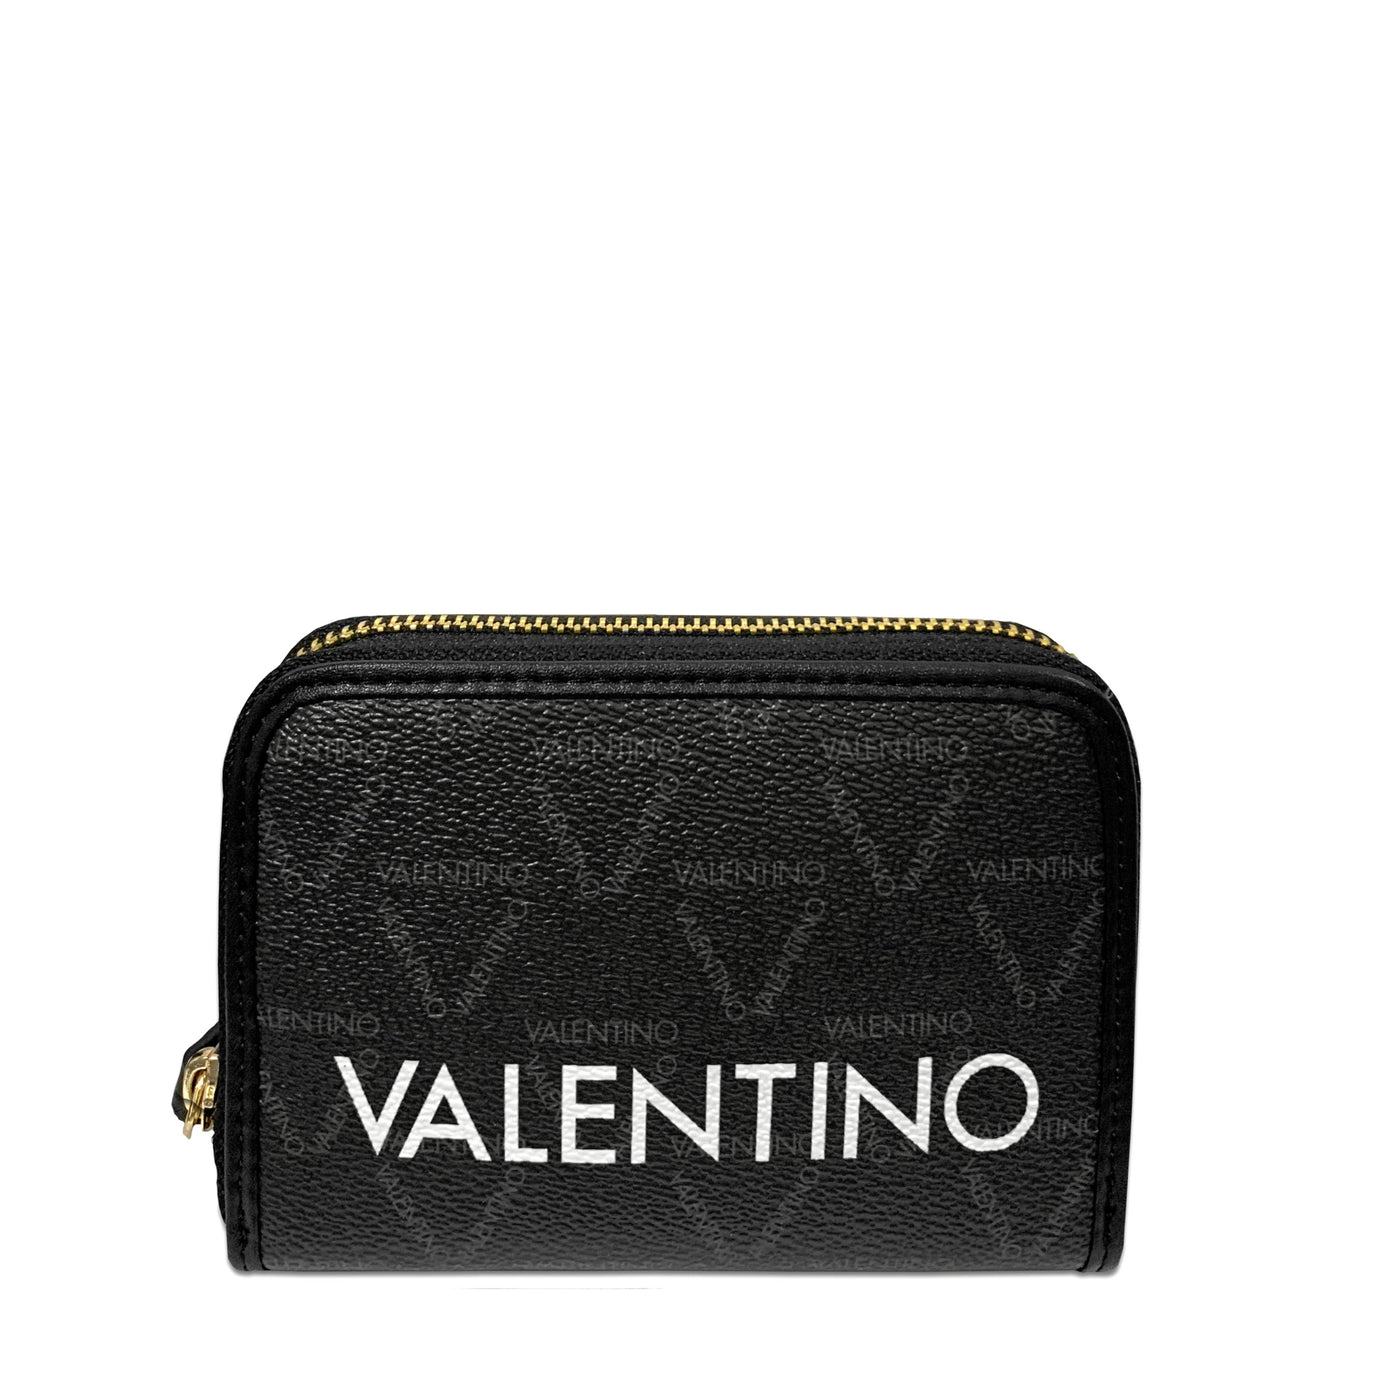 Valentino by Mario Valentino Liuto Ladies Small Purse in Black